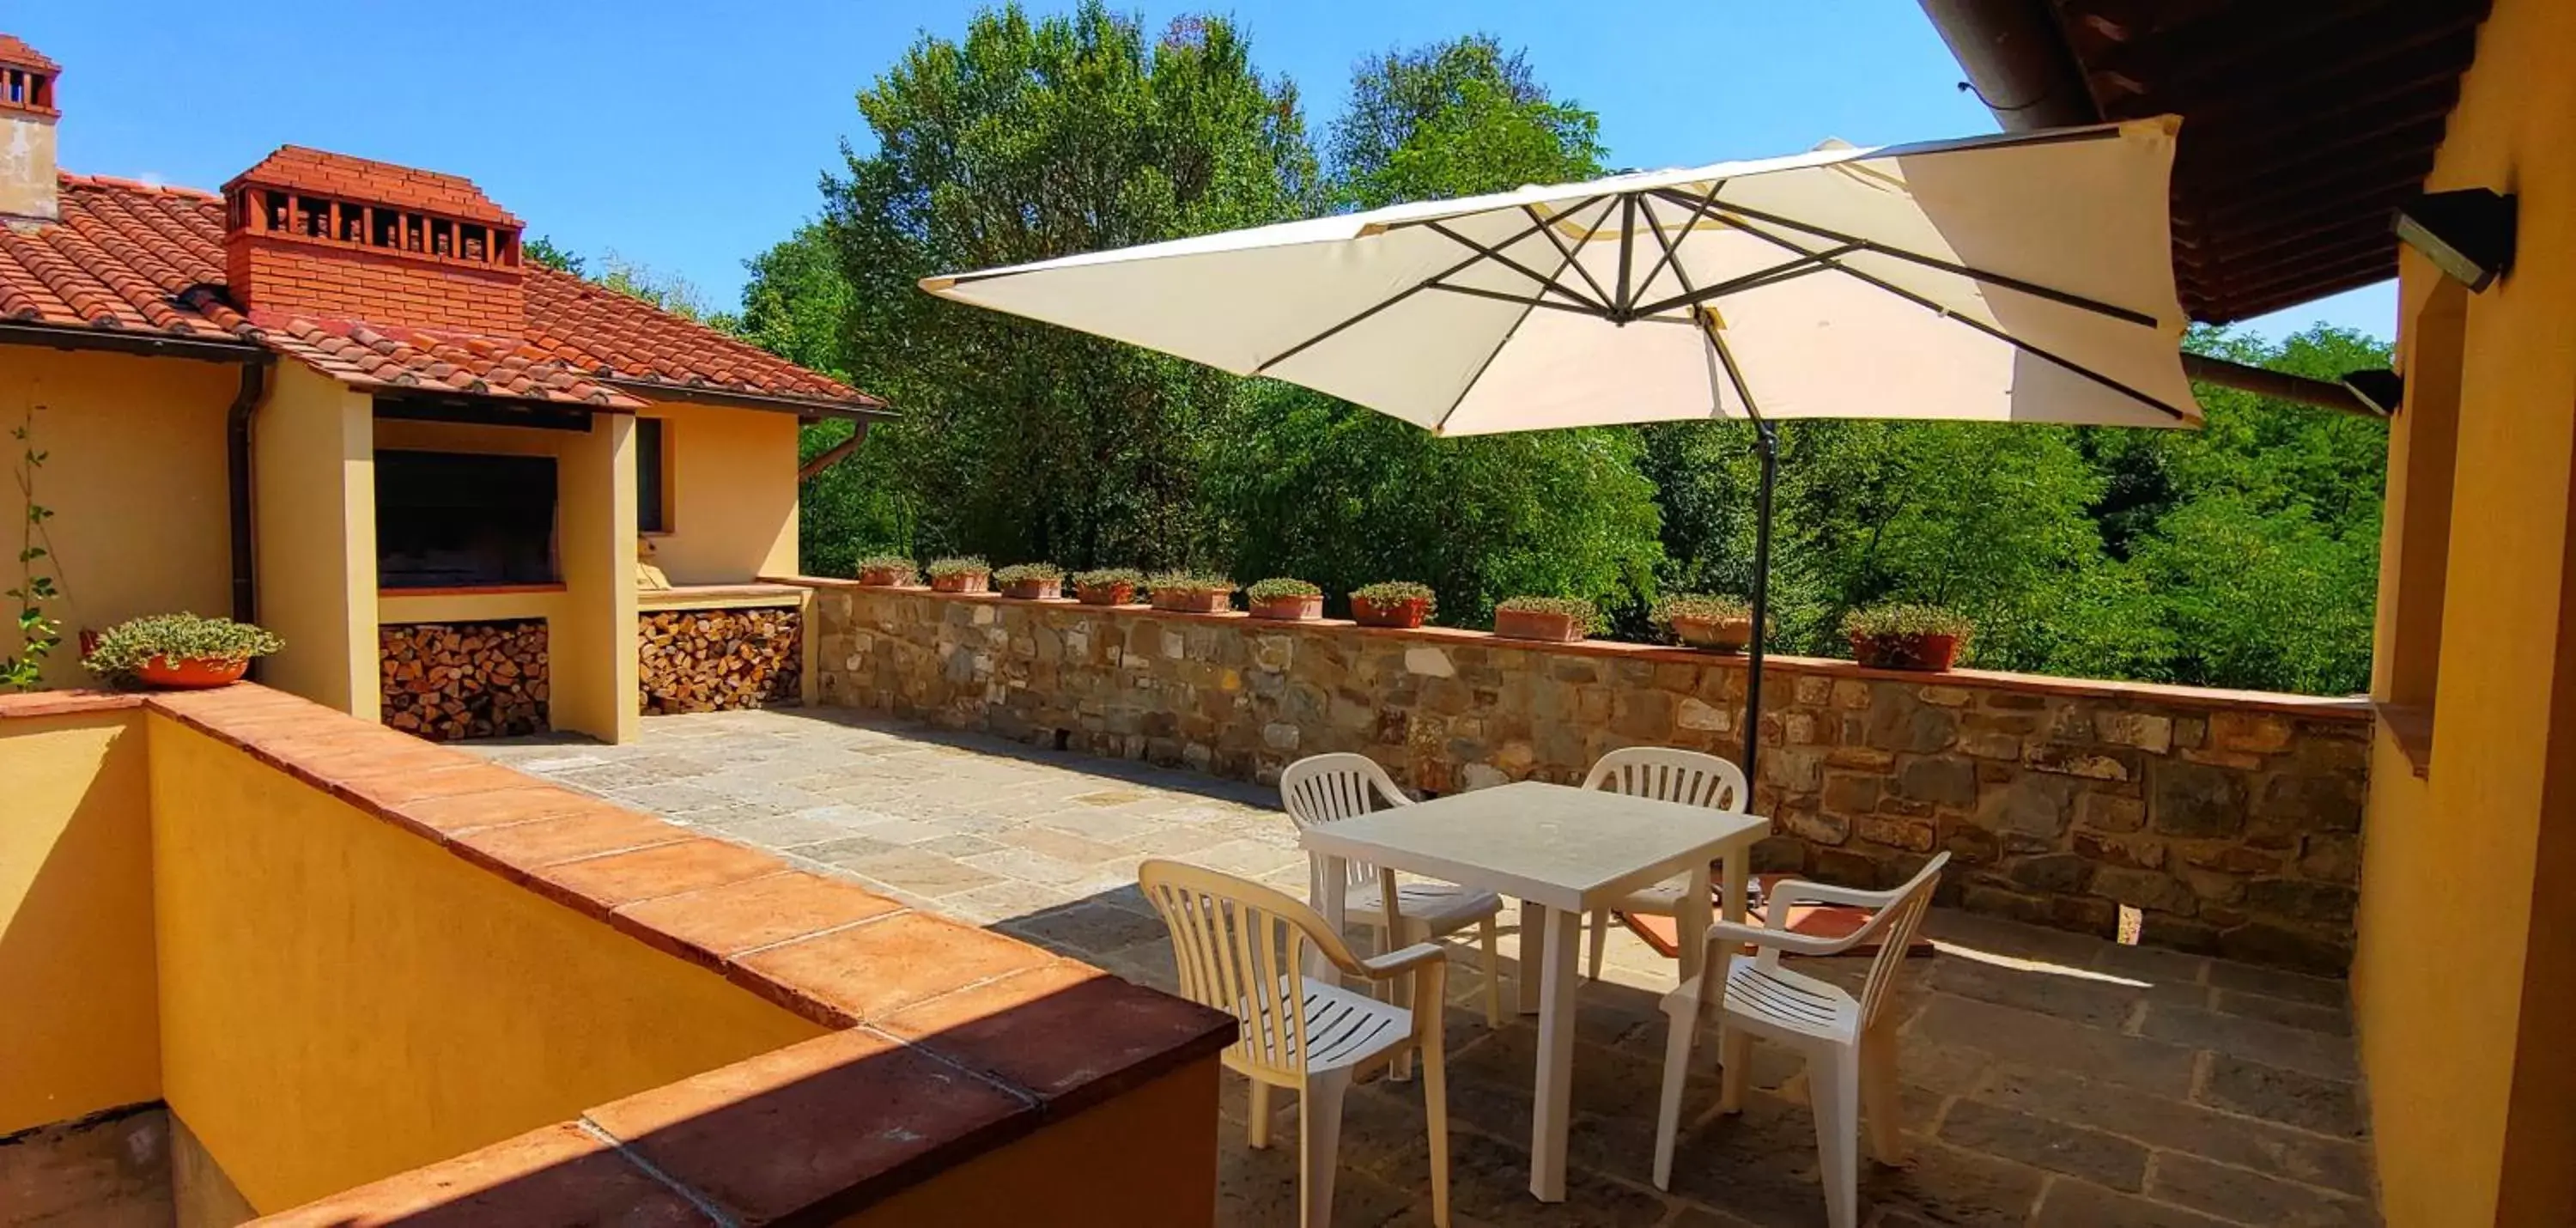 BBQ facilities, Balcony/Terrace in Torrebianca Tuscany